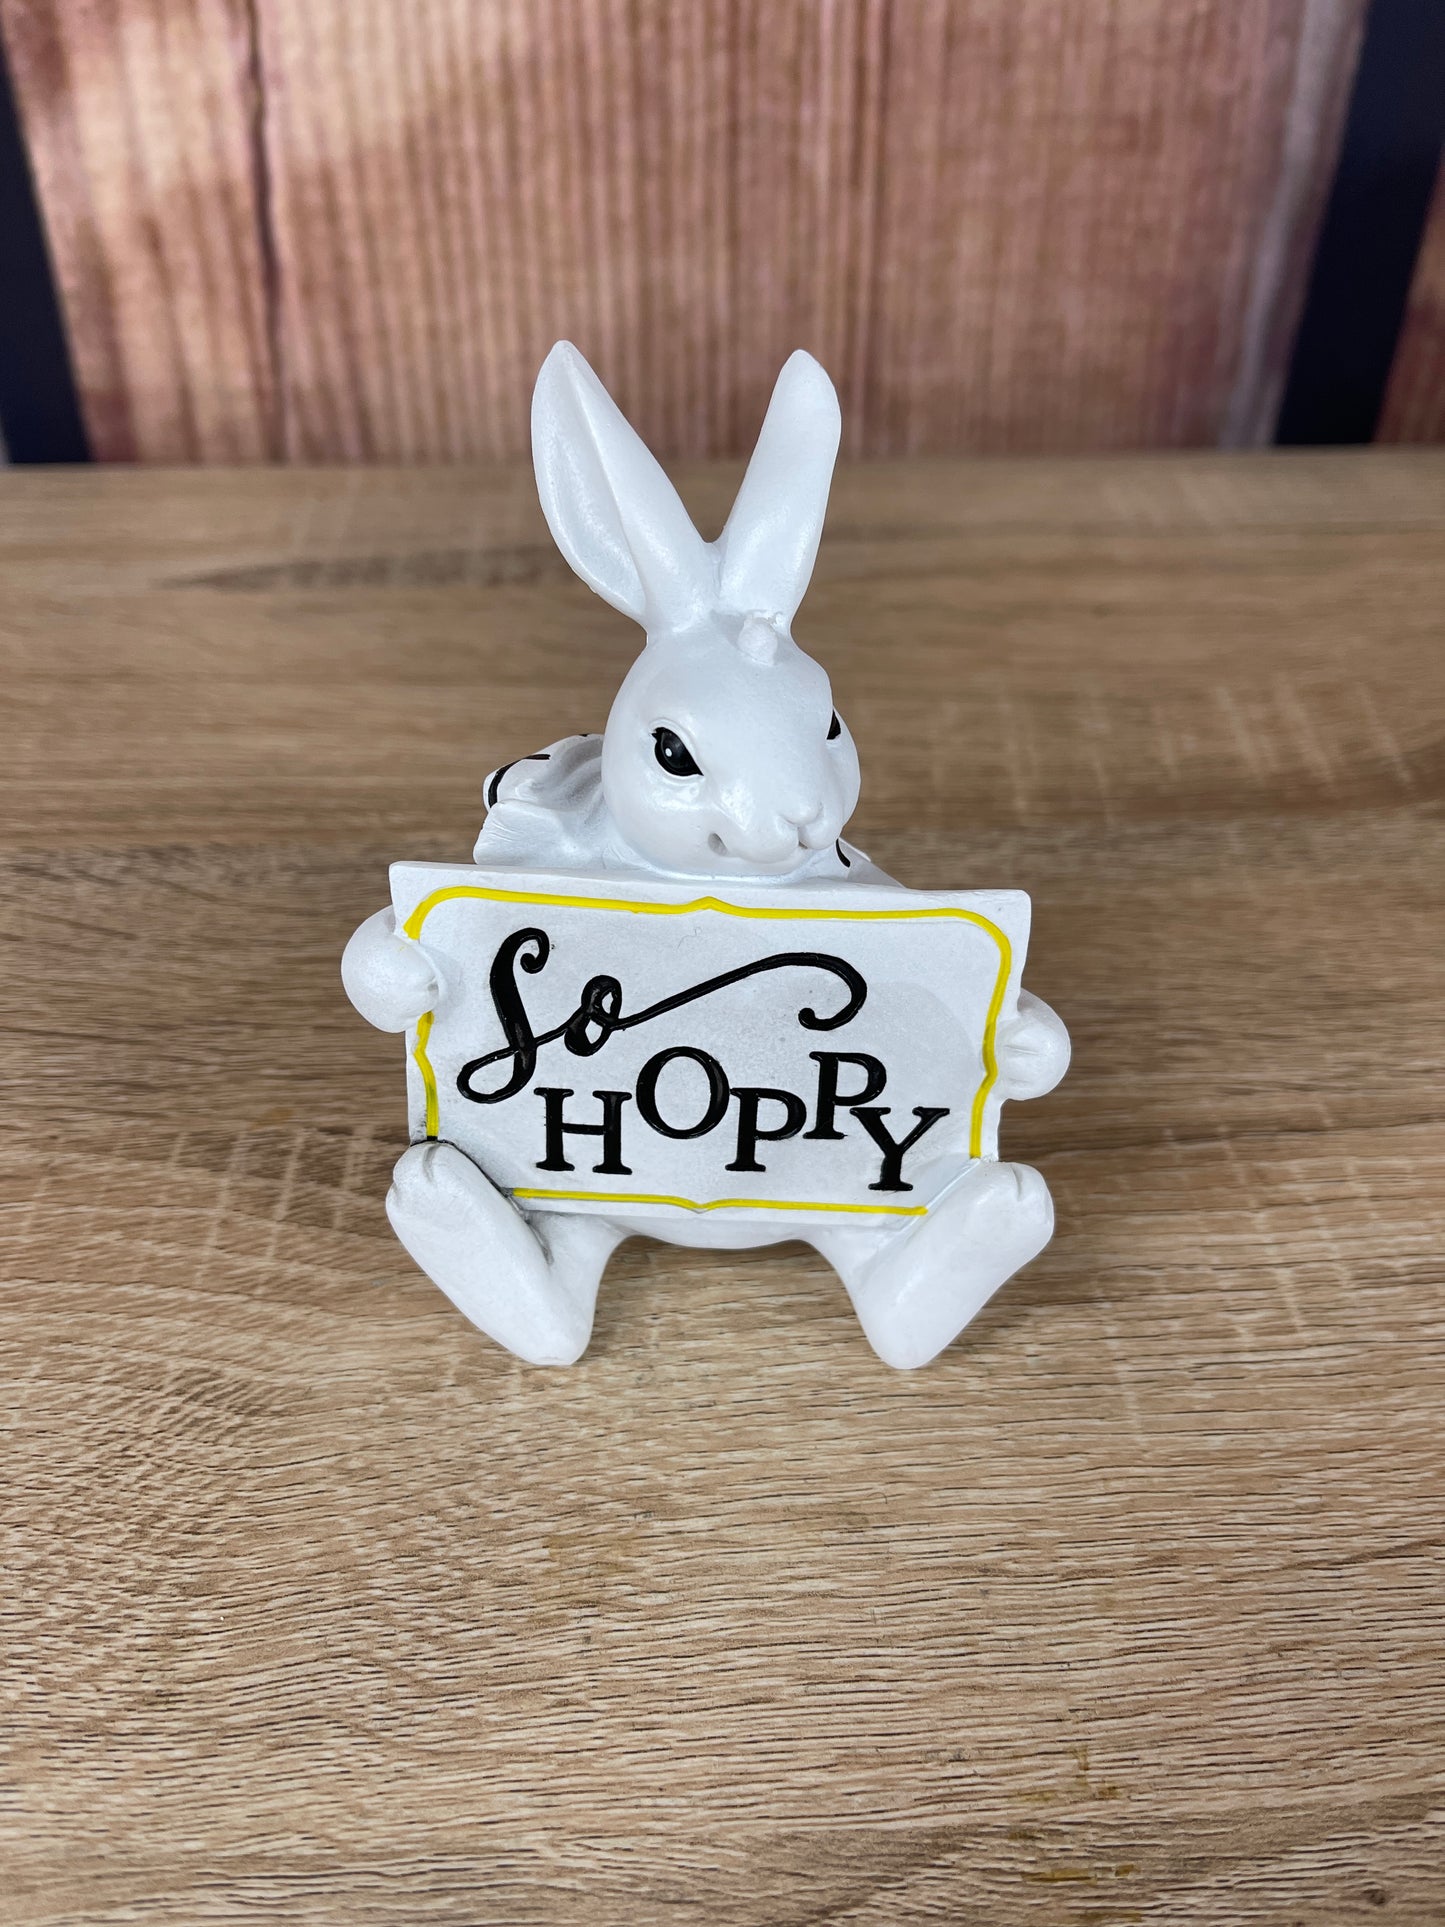 Bunny Shelf Sitter - So Hoppy